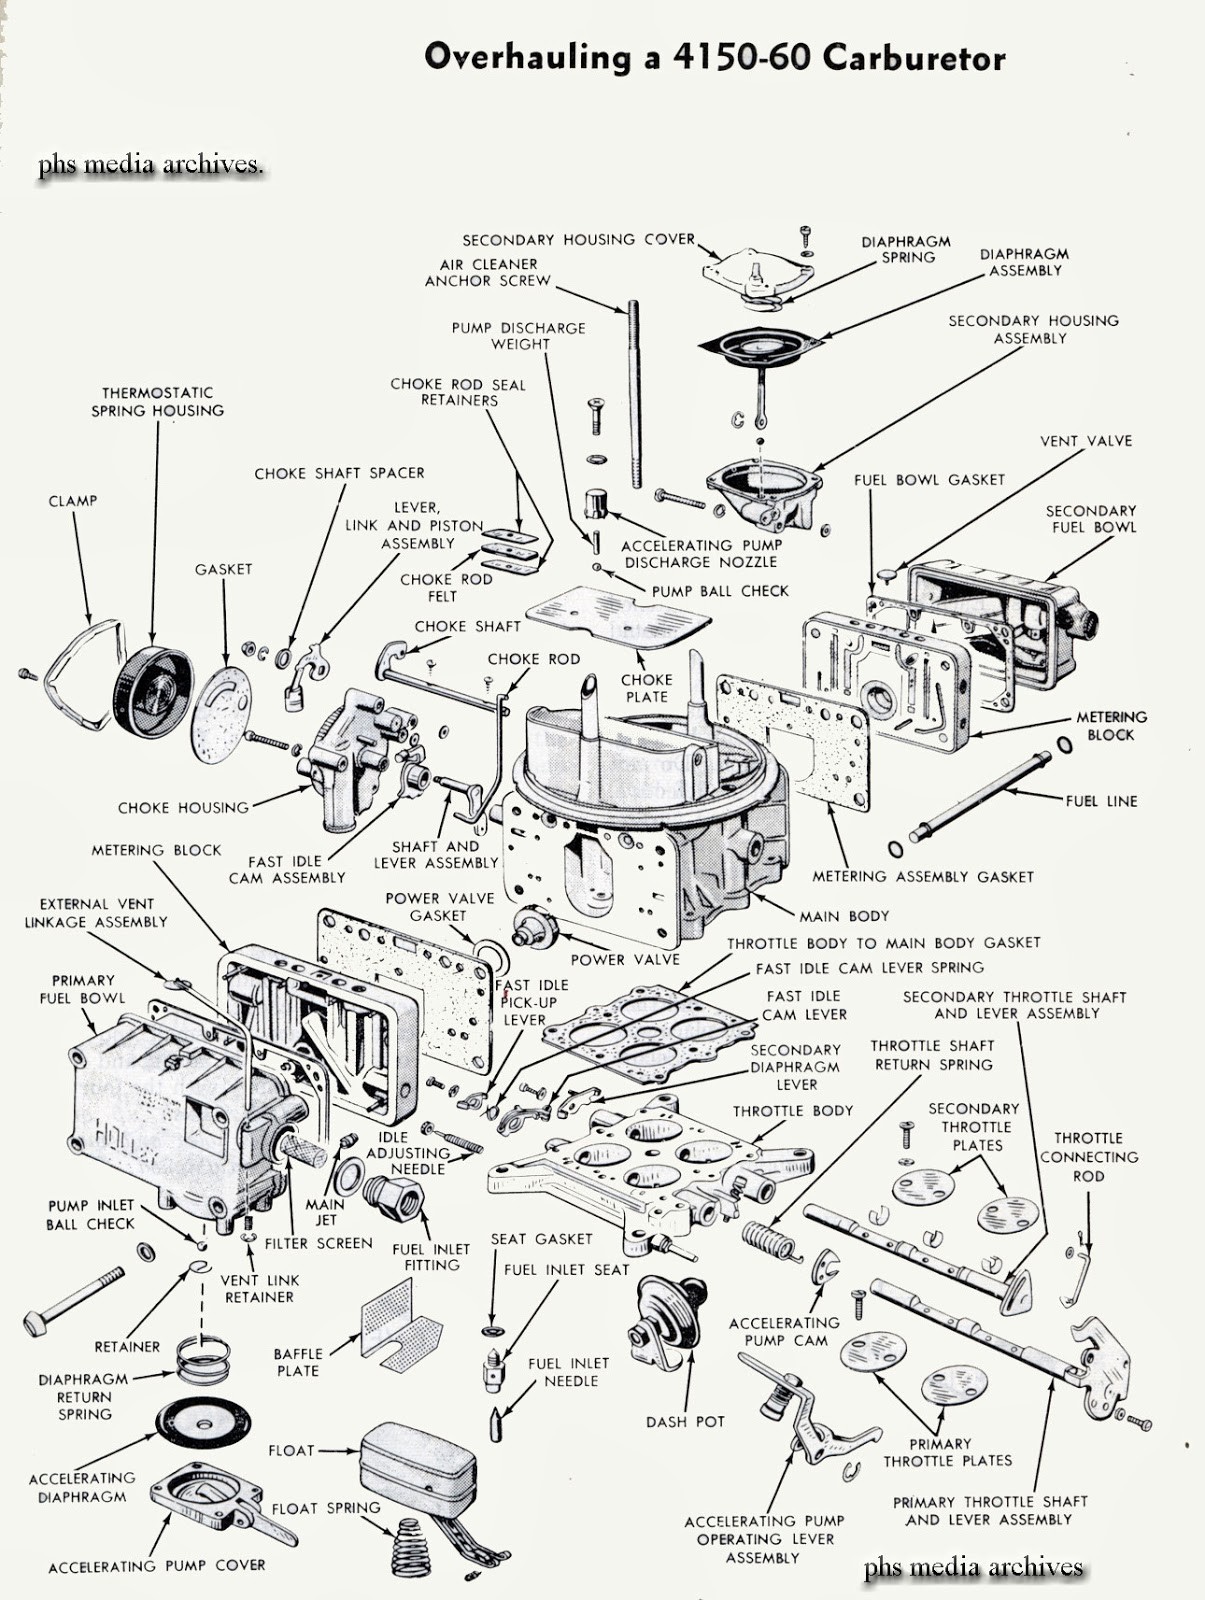 carburetor diagram also holley carburetor parts diagram on edelbrock